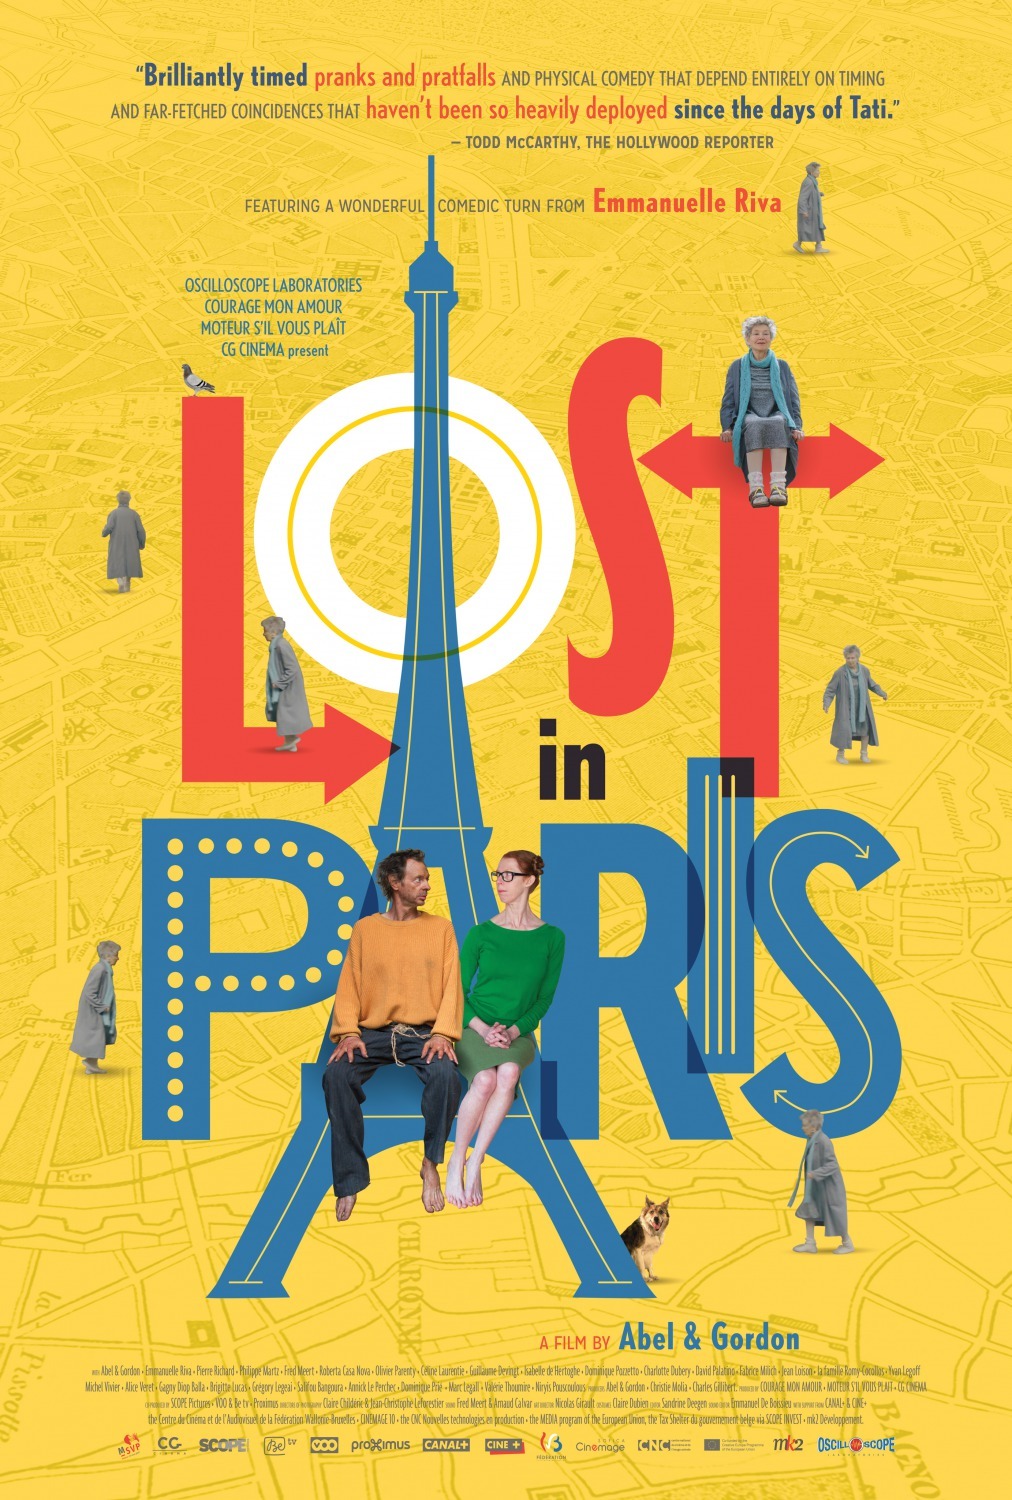 Nonton film Lost in Paris layarkaca21 indoxx1 ganool online streaming terbaru